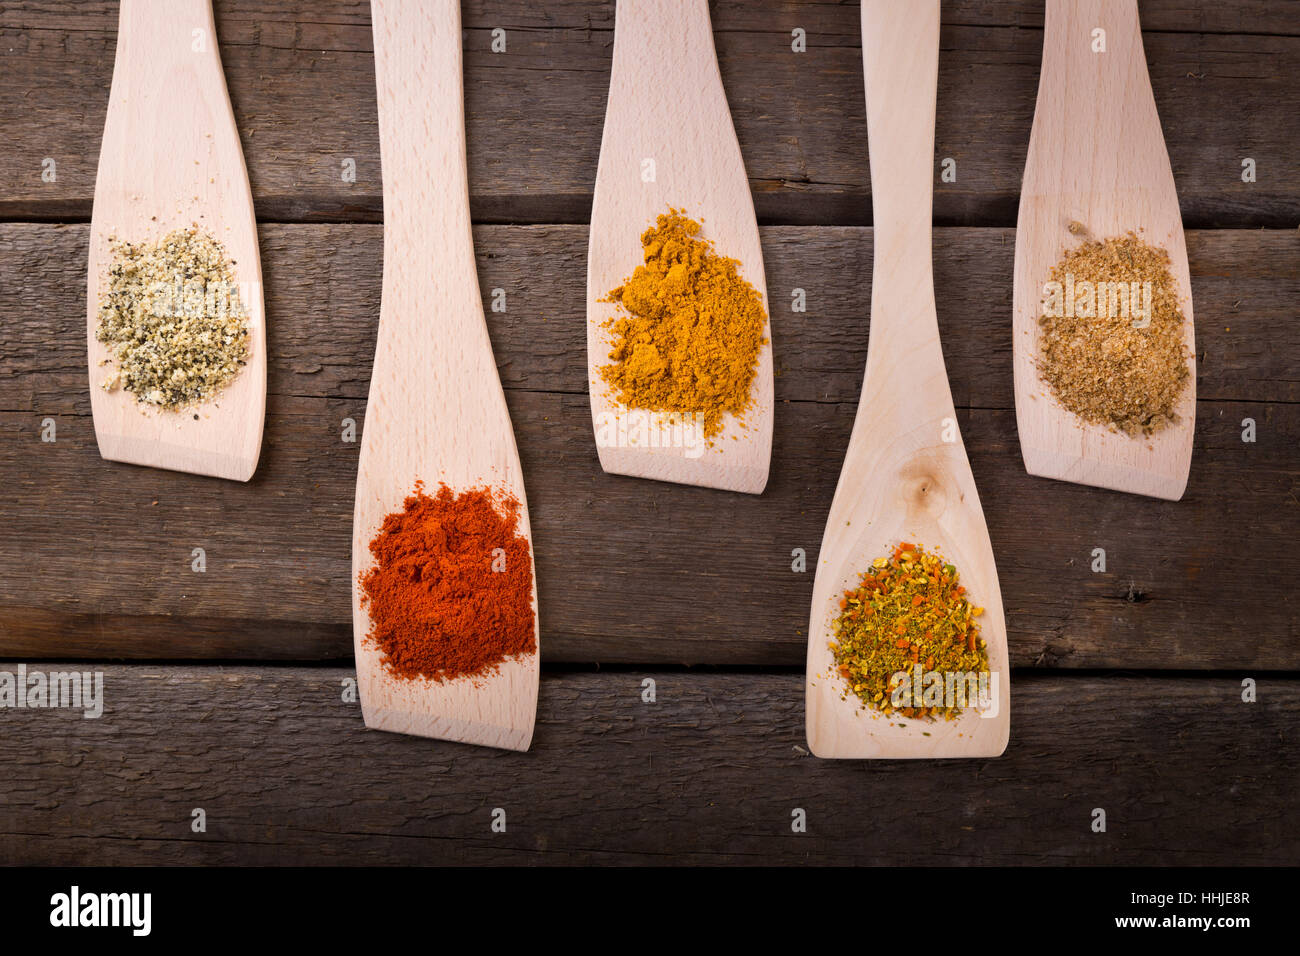 Ingredienti alimentari - spezie aromatiche su cucchiai di legno Foto Stock